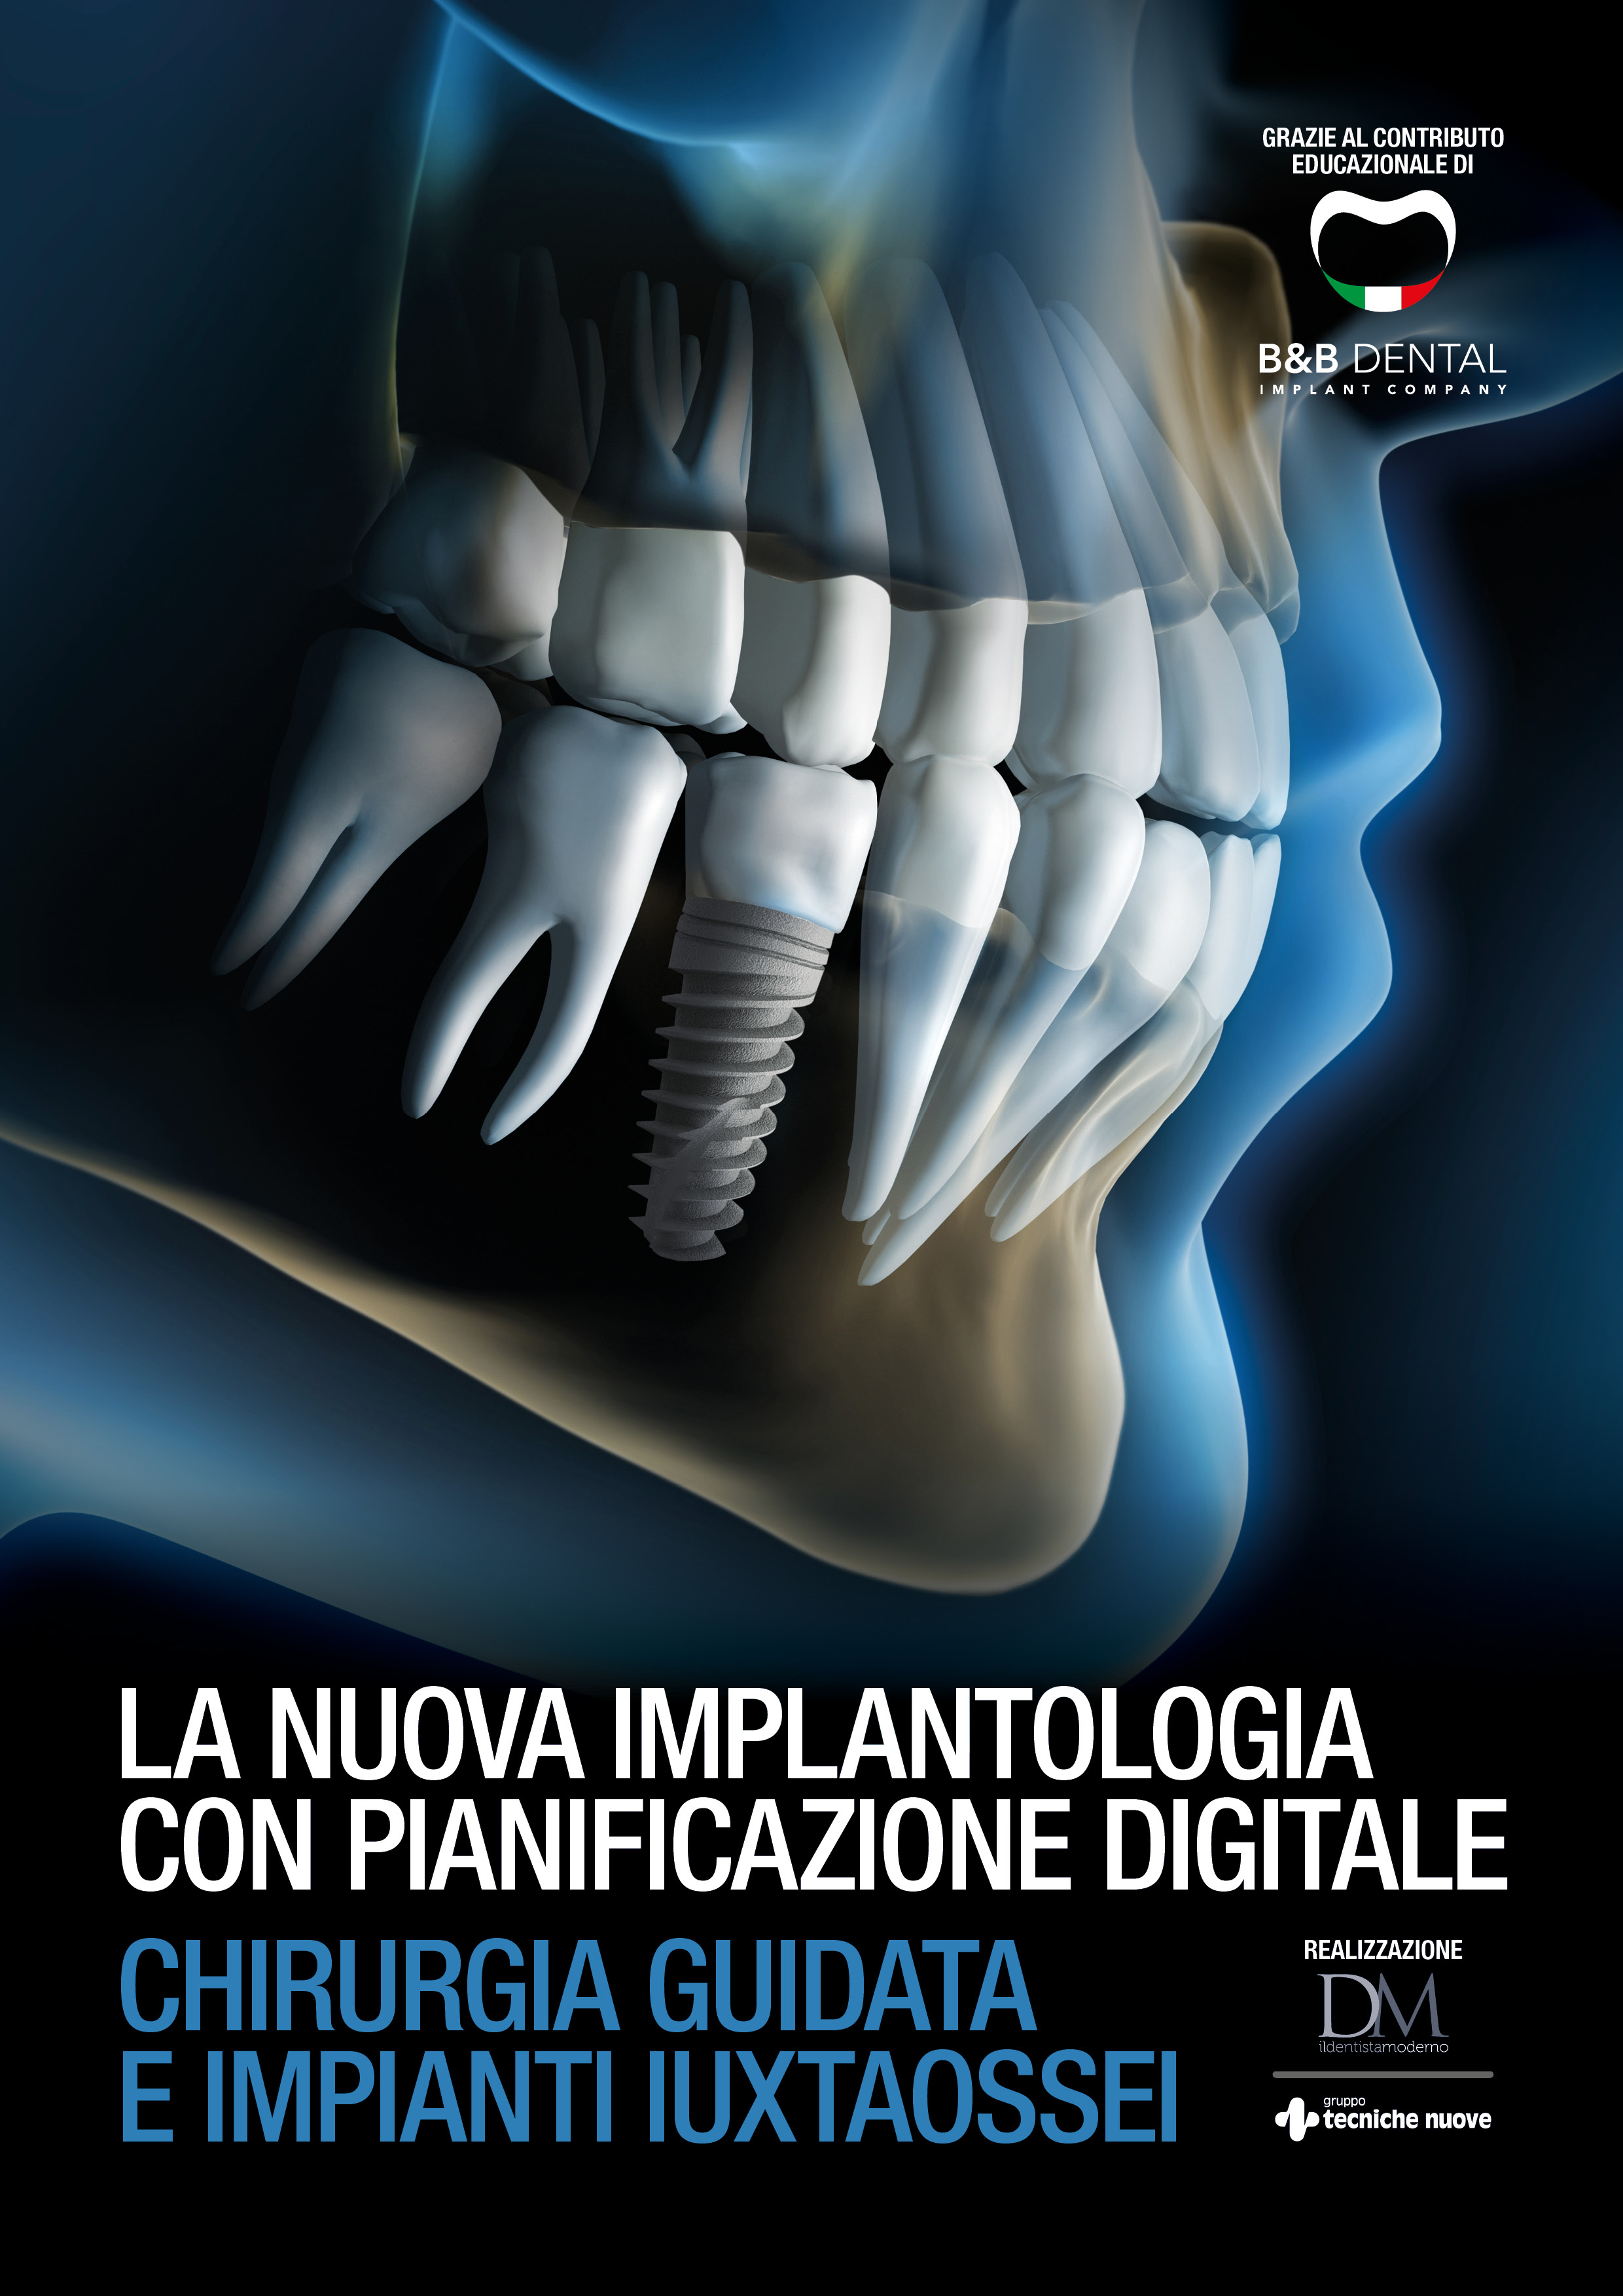 DM B&B Dental - La nuova implantologia con pianificazione digitale cover